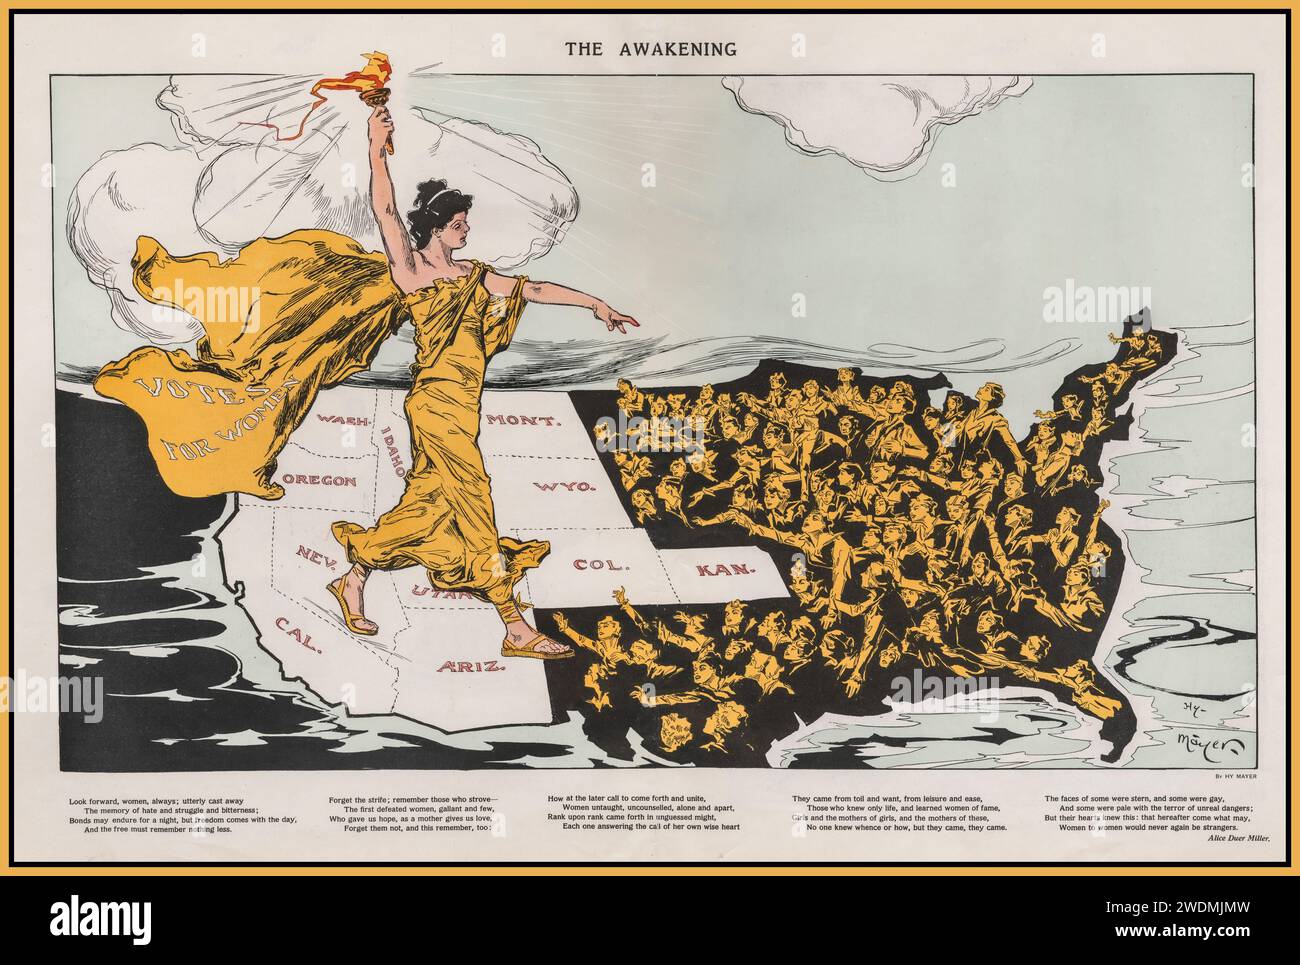 SUFFRAGE ILLUSTRATION MAP 1915 'THE AWAKENING' Une étonnante 'carte du suffrage', qui a joué un rôle majeur dans la lutte réussie pour le suffrage des femmes aux États-Unis Lady Liberty, portant une cape étiquetée 'votes for Women', se dresse à cheval sur les États (de couleur blanche) qui avaient adopté le suffrage. Elle tient son flambeau, apportant «l'illumination» aux femmes dans ces États encore dans l'obscurité. Cette carte est apparue dans le magazine Puck pendant la campagne de l'Empire State, l'illustrateur Henry 'Hy' Mayer, un artiste d'origine allemande qui était le dessinateur en chef de Puck au moment de sa publication. Banque D'Images